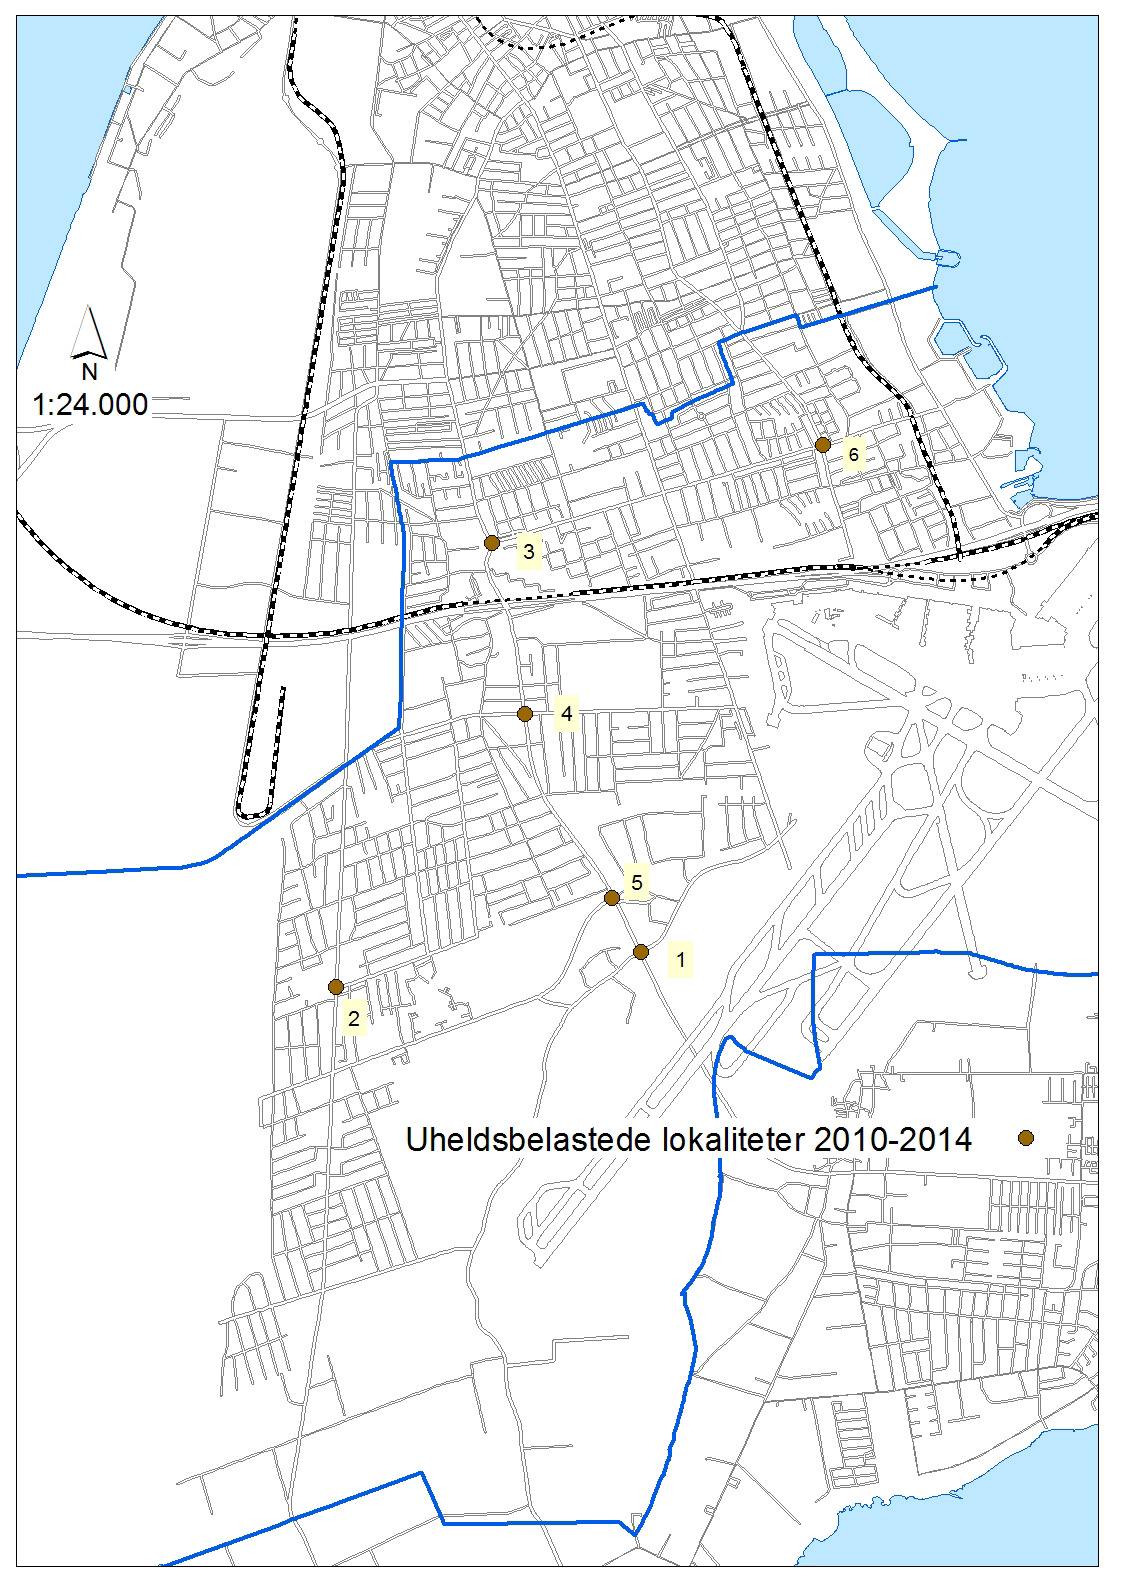 Kort 8: Nummerering af uheldsbelastede lokaliteter i Tårnby Kommune